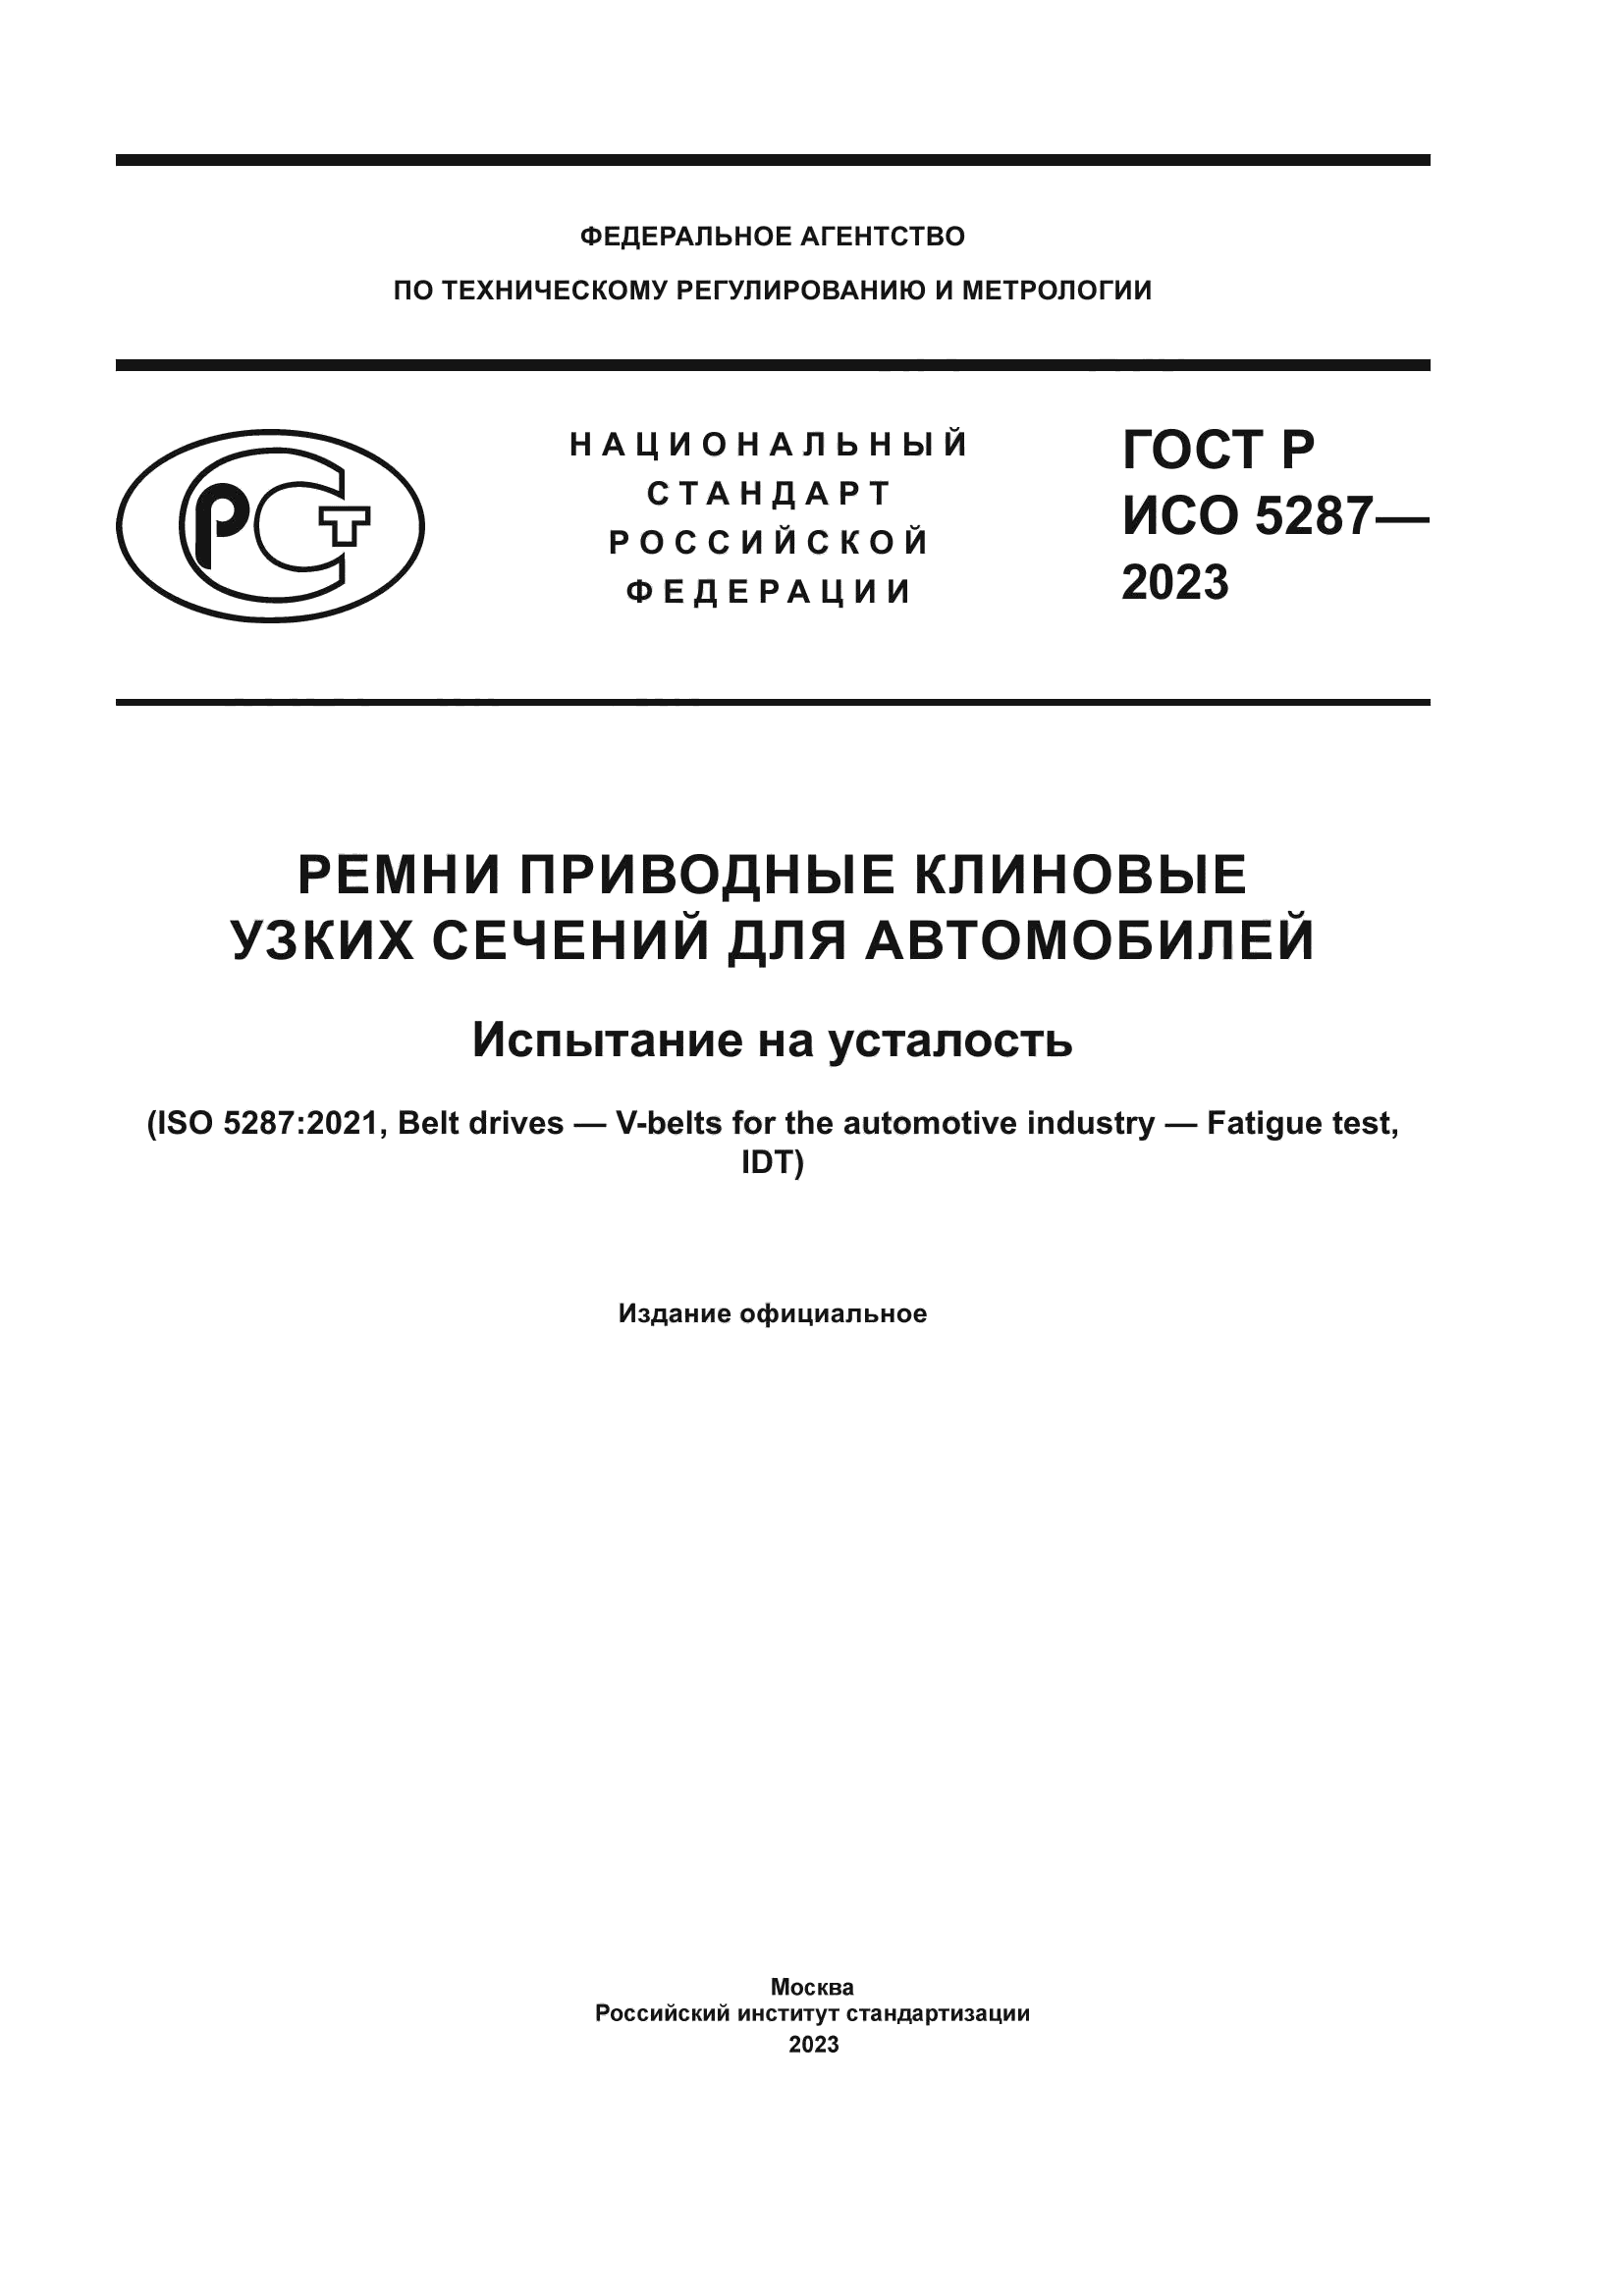 ГОСТ Р ИСО 5287-2023